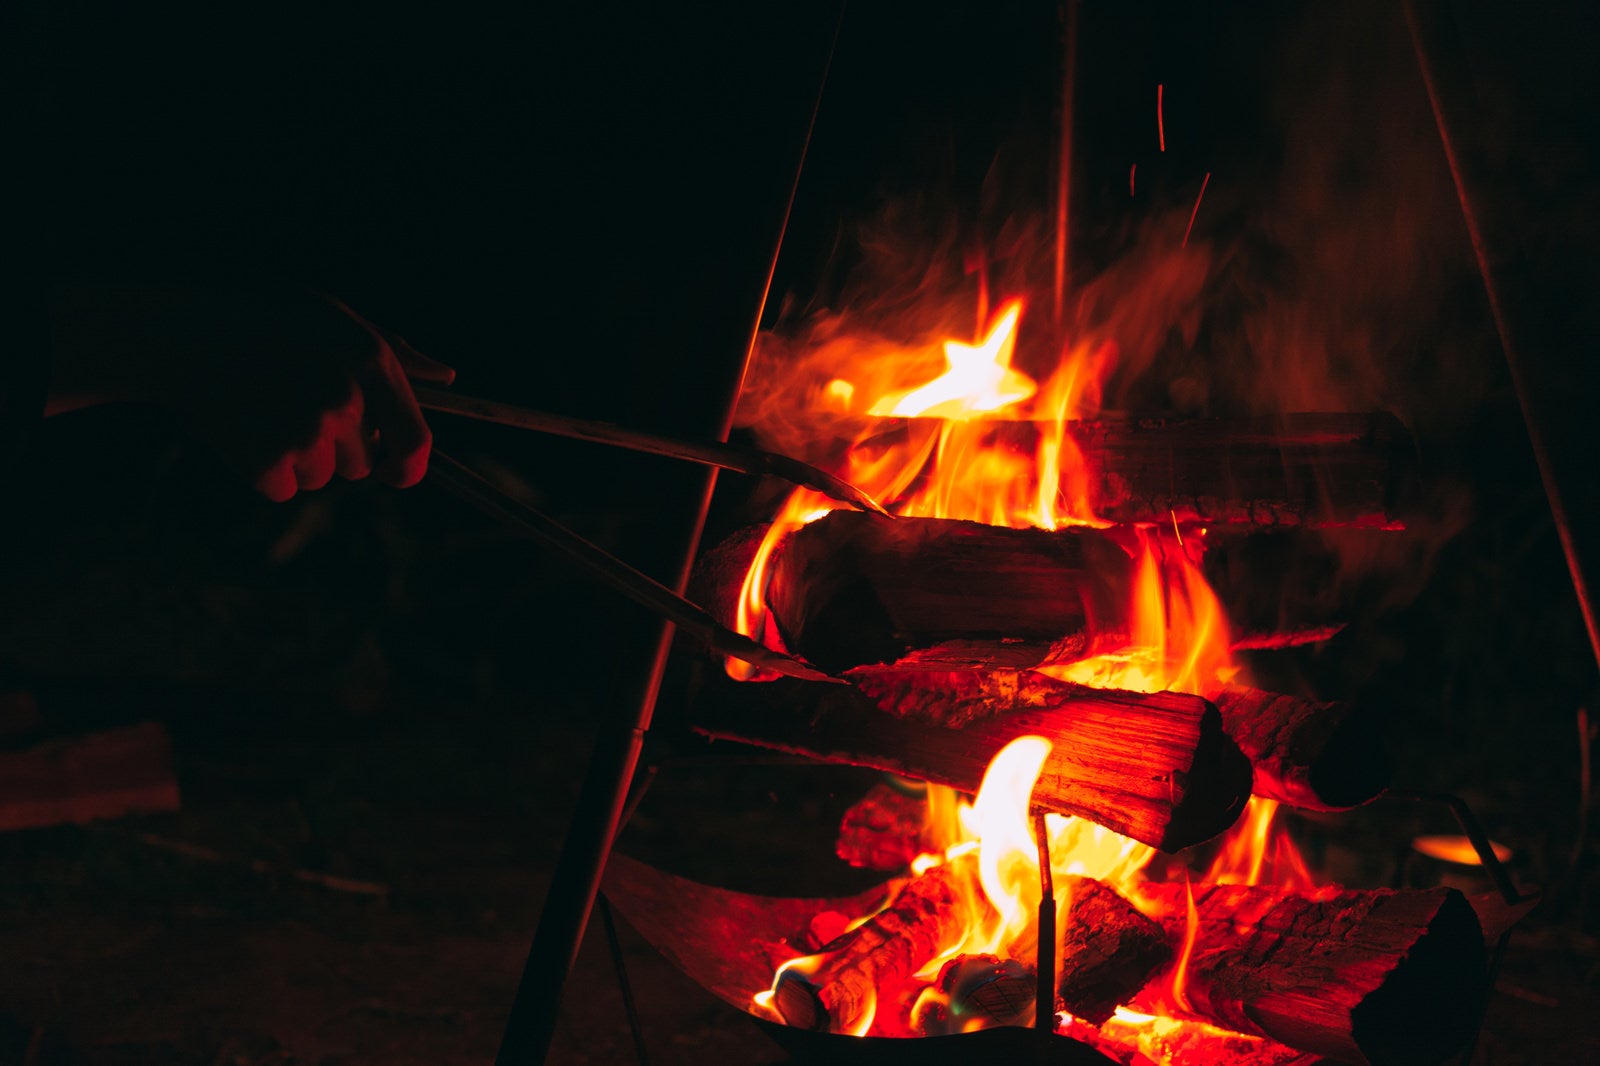 「キャンプで焚き火の様子」の写真